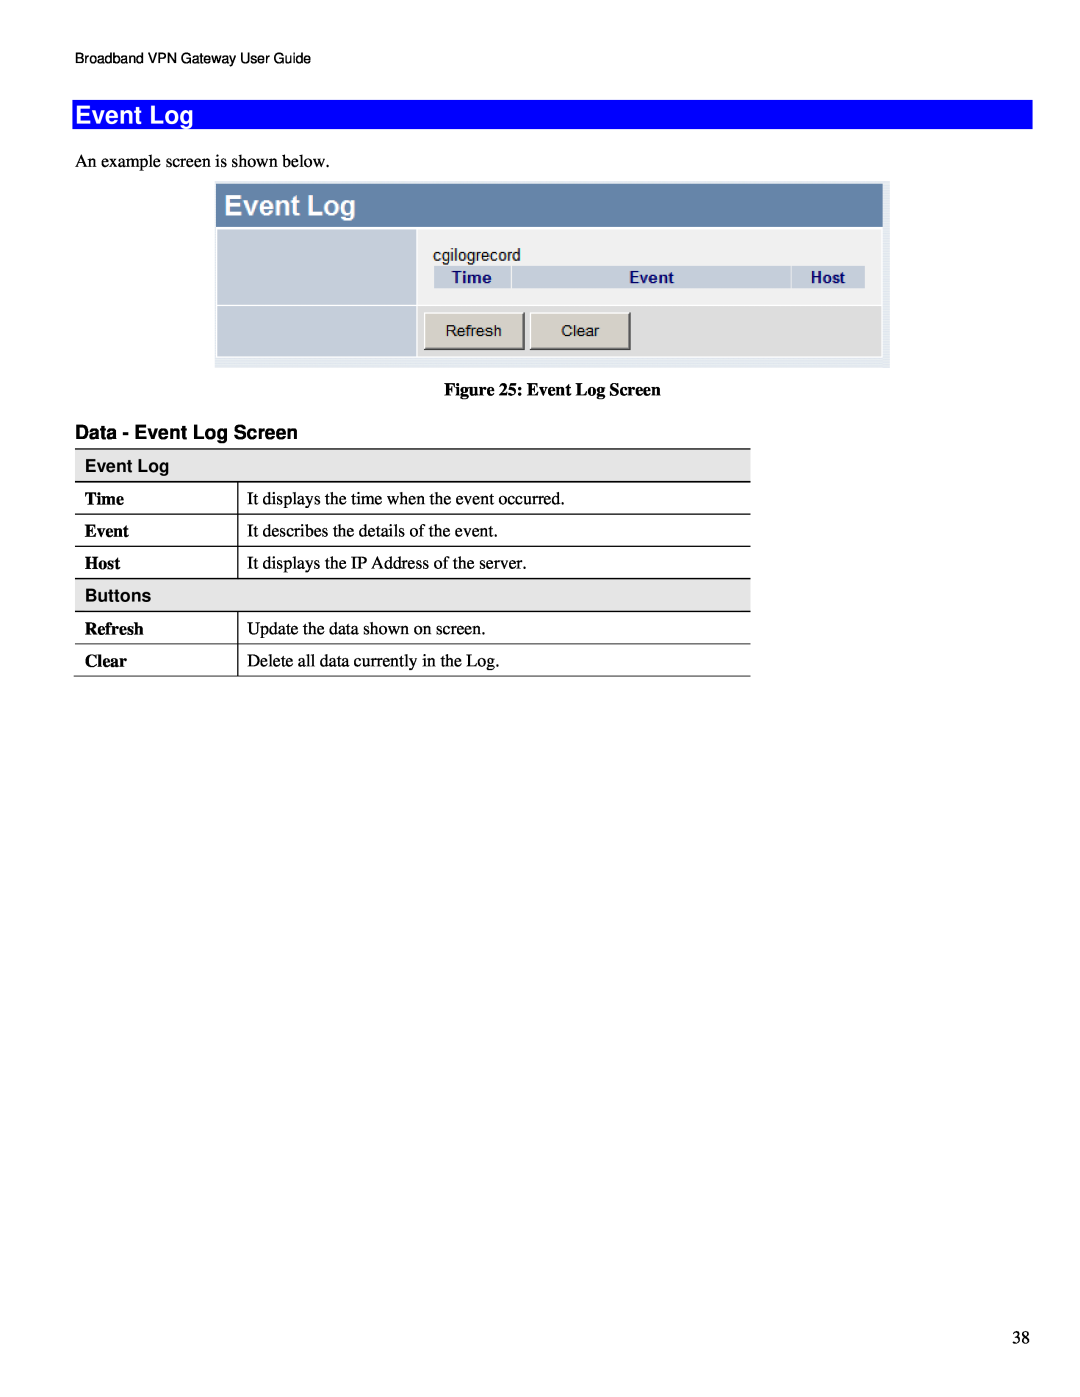 TRENDnet TW100-BRV324 manual Data - Event Log Screen, Buttons 